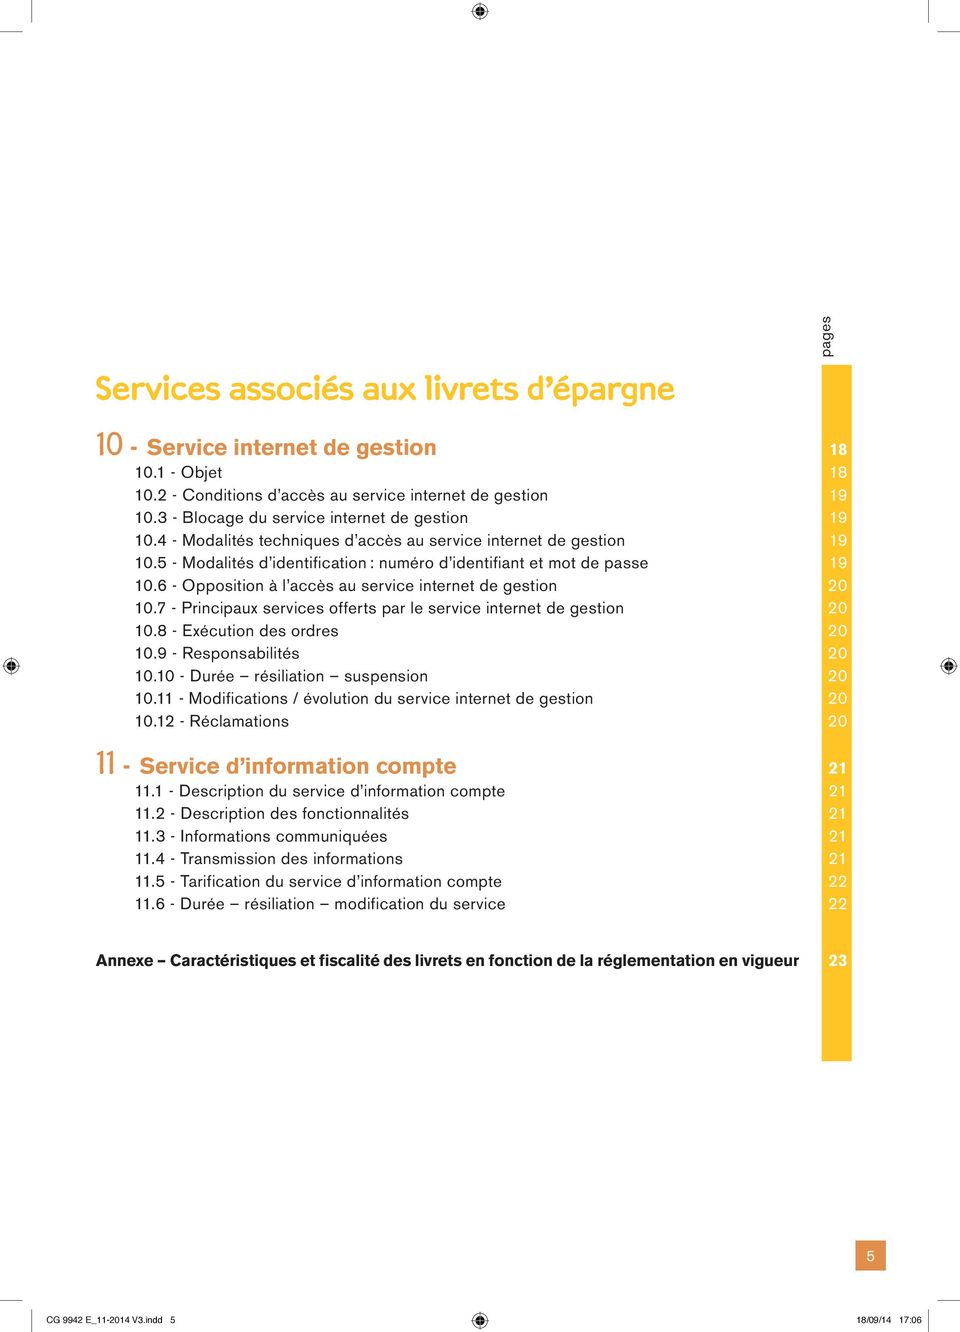 6 - Opposition à l accès au service internet de gestion 20 10.7 - Principaux services offerts par le service internet de gestion 20 10.8 - Exécution des ordres 20 10.9 - Responsabilités 20 10.